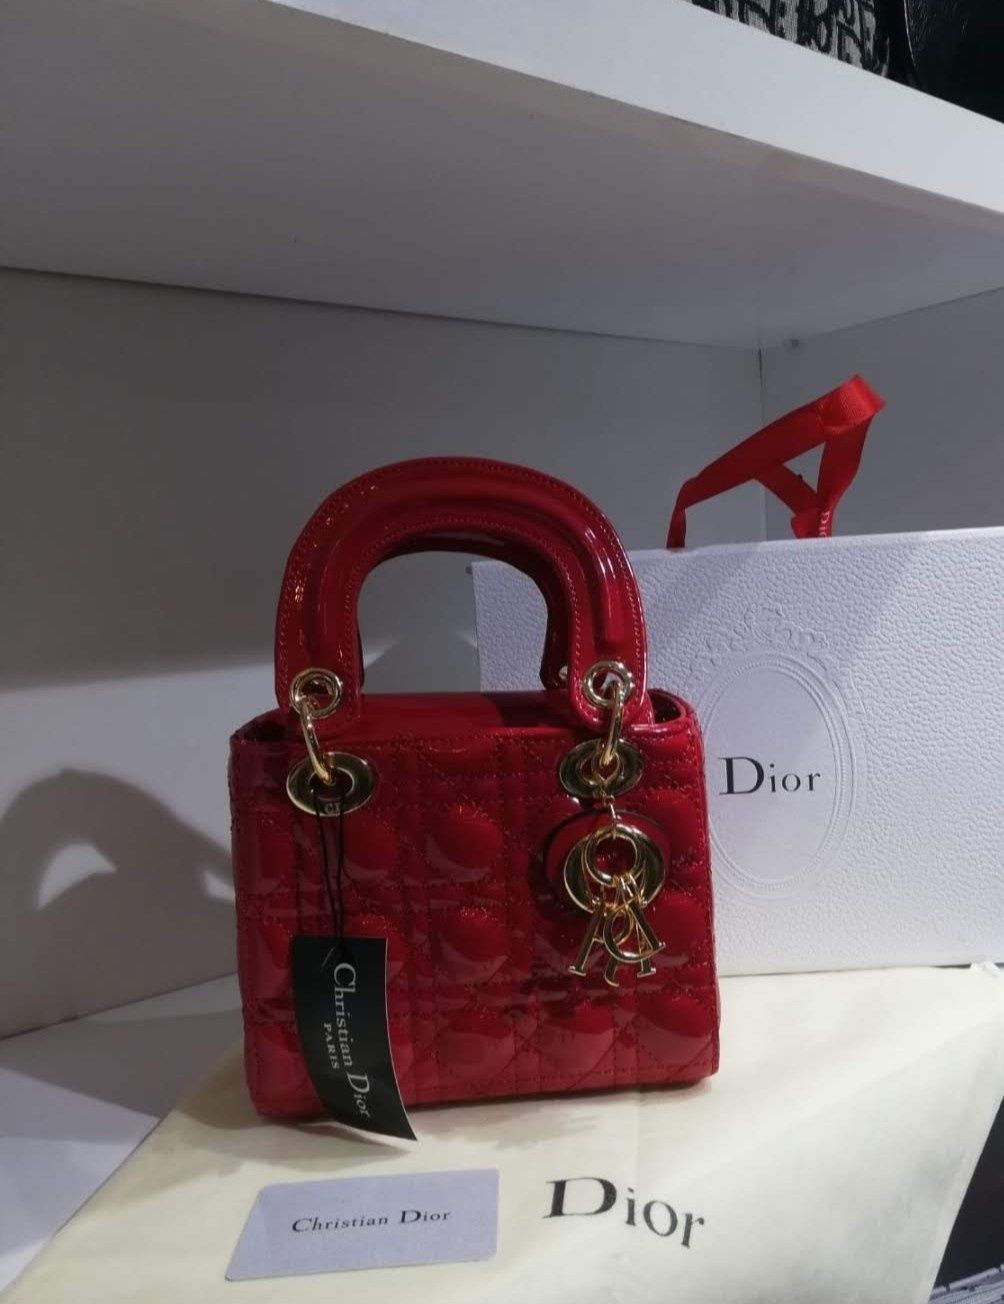 Geanta damă Dior mini,accesorii metalice,saculet inclus